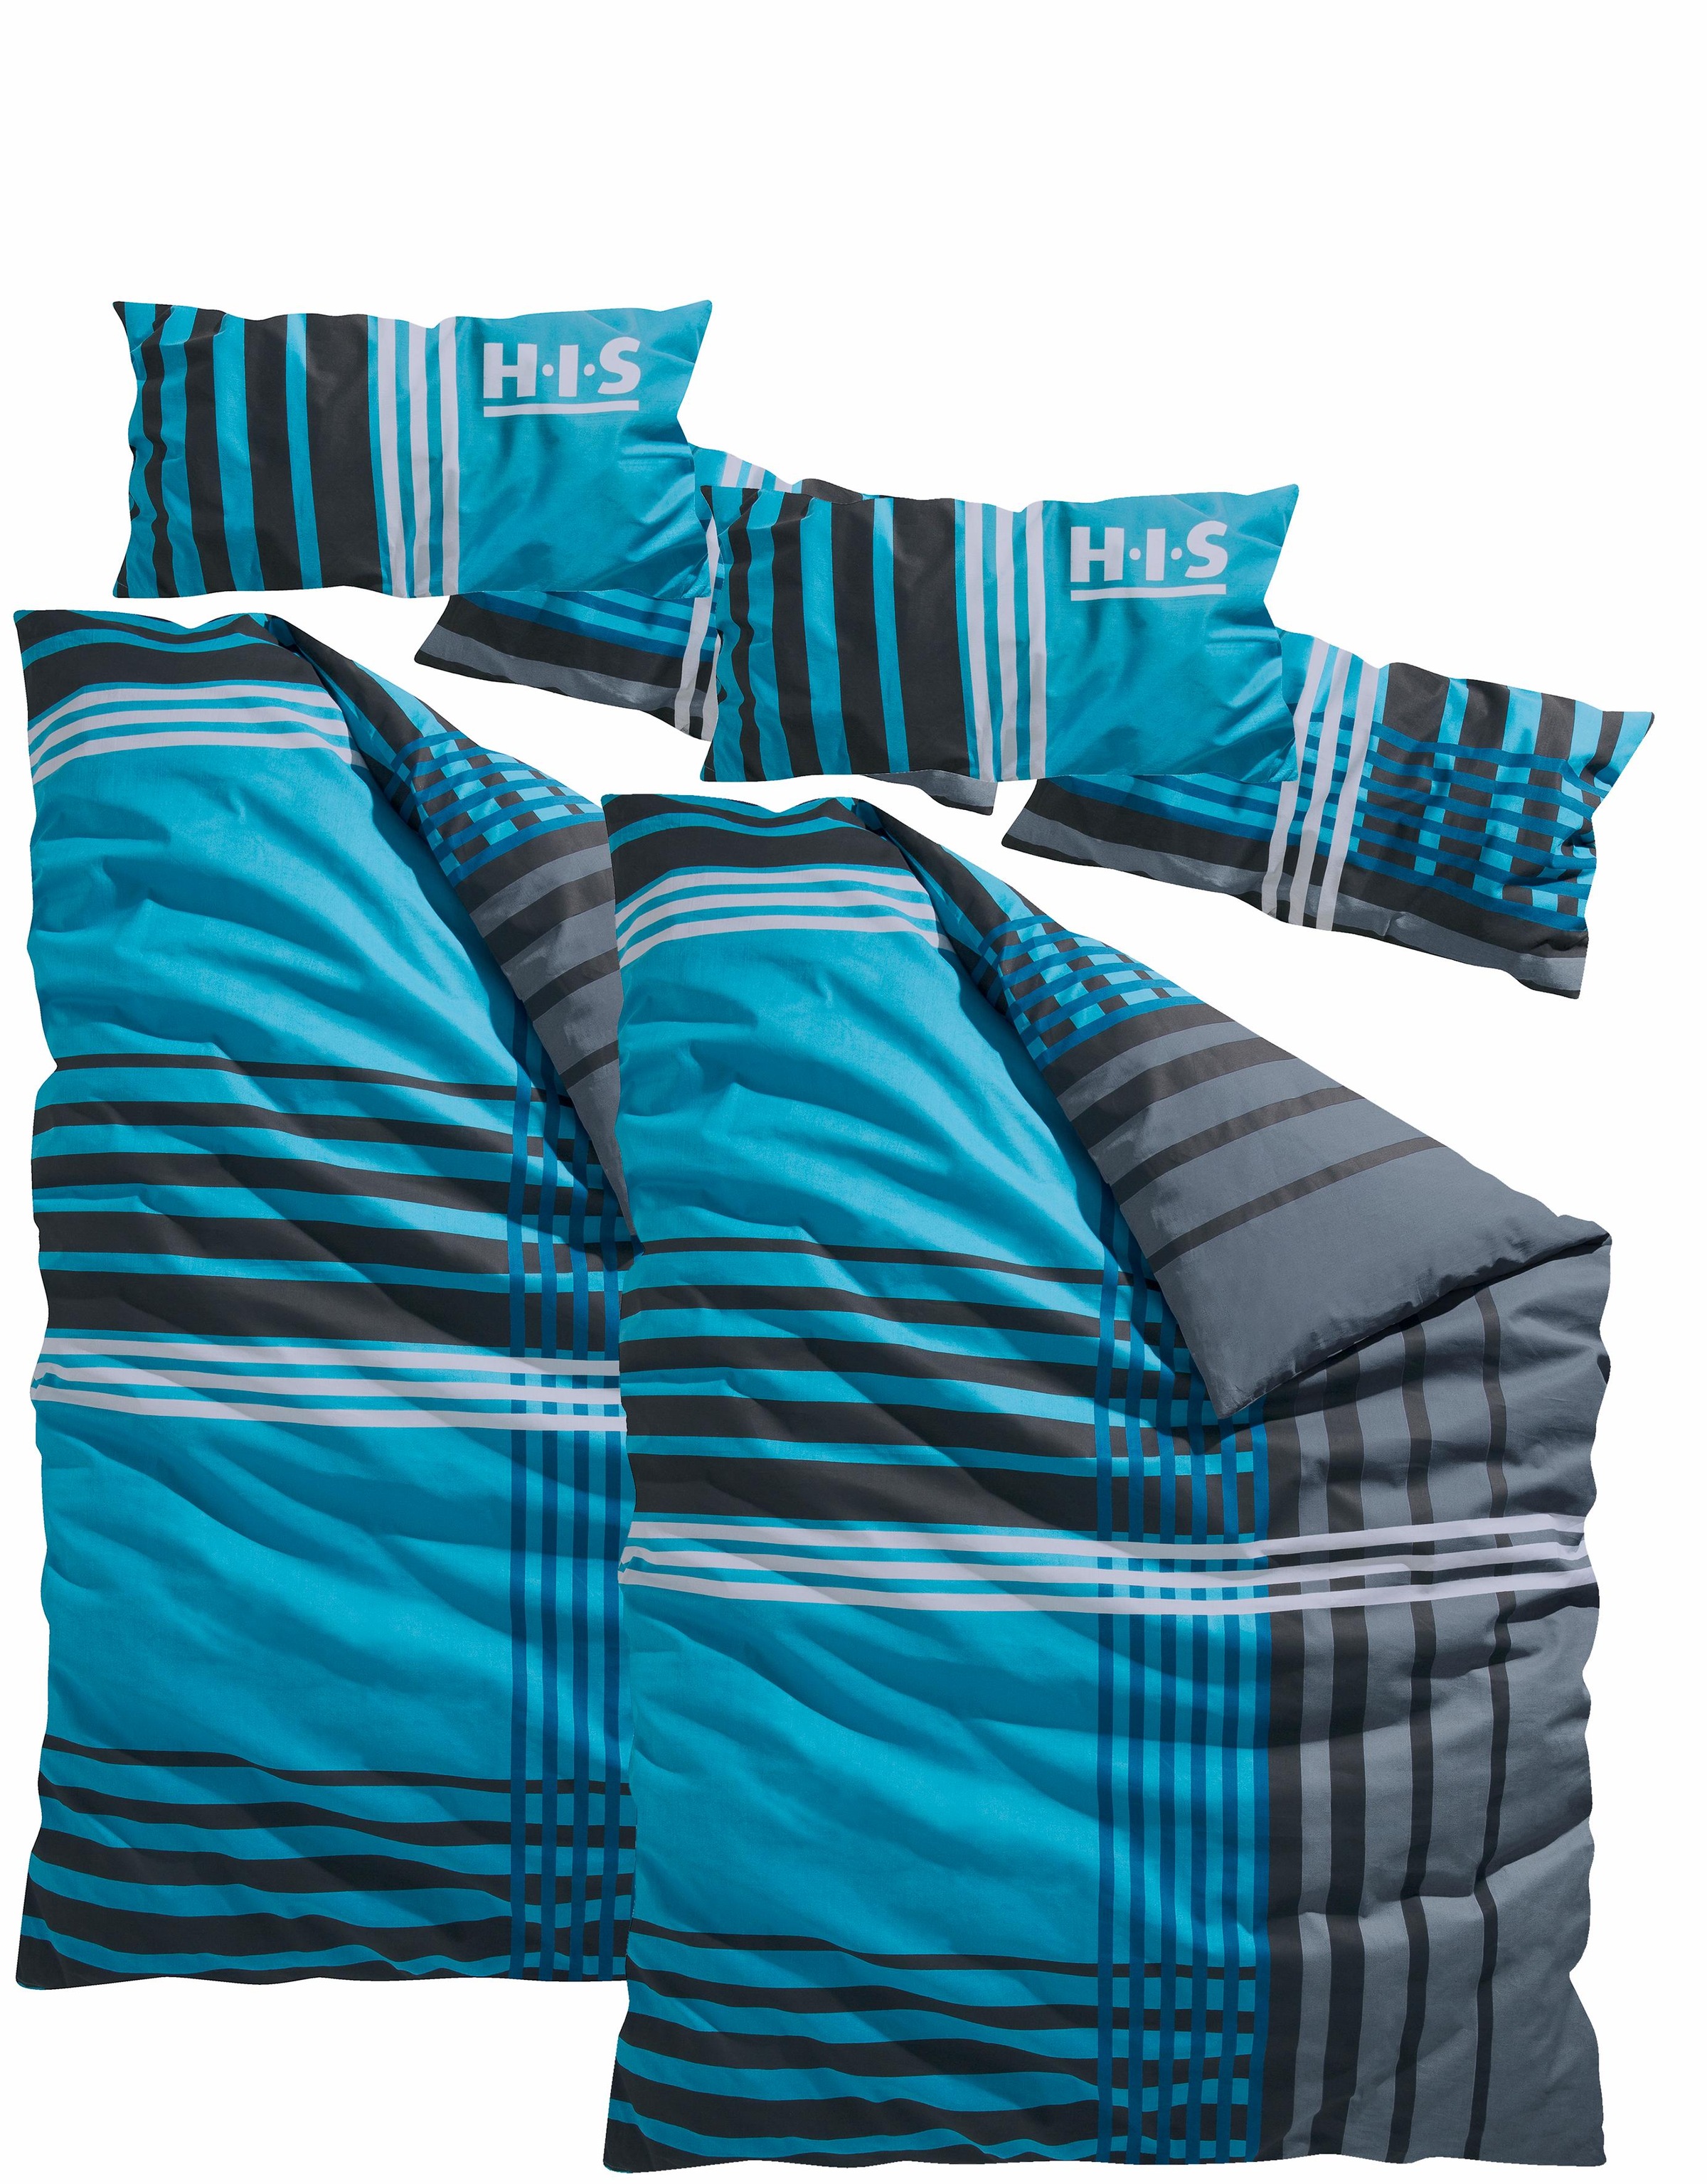 H.I.S Bettwäsche »Philip«, im sportlichen Karo Design, aus 100% Baumwolle,  Renforcé Qualität, Bett- und Kopfkissenbezug mit Reißverschluss, Bettwäsche  Set unterstützt die Initiative Cotton made in Africa, Made in Green  zertifiziert auf Rechnung |